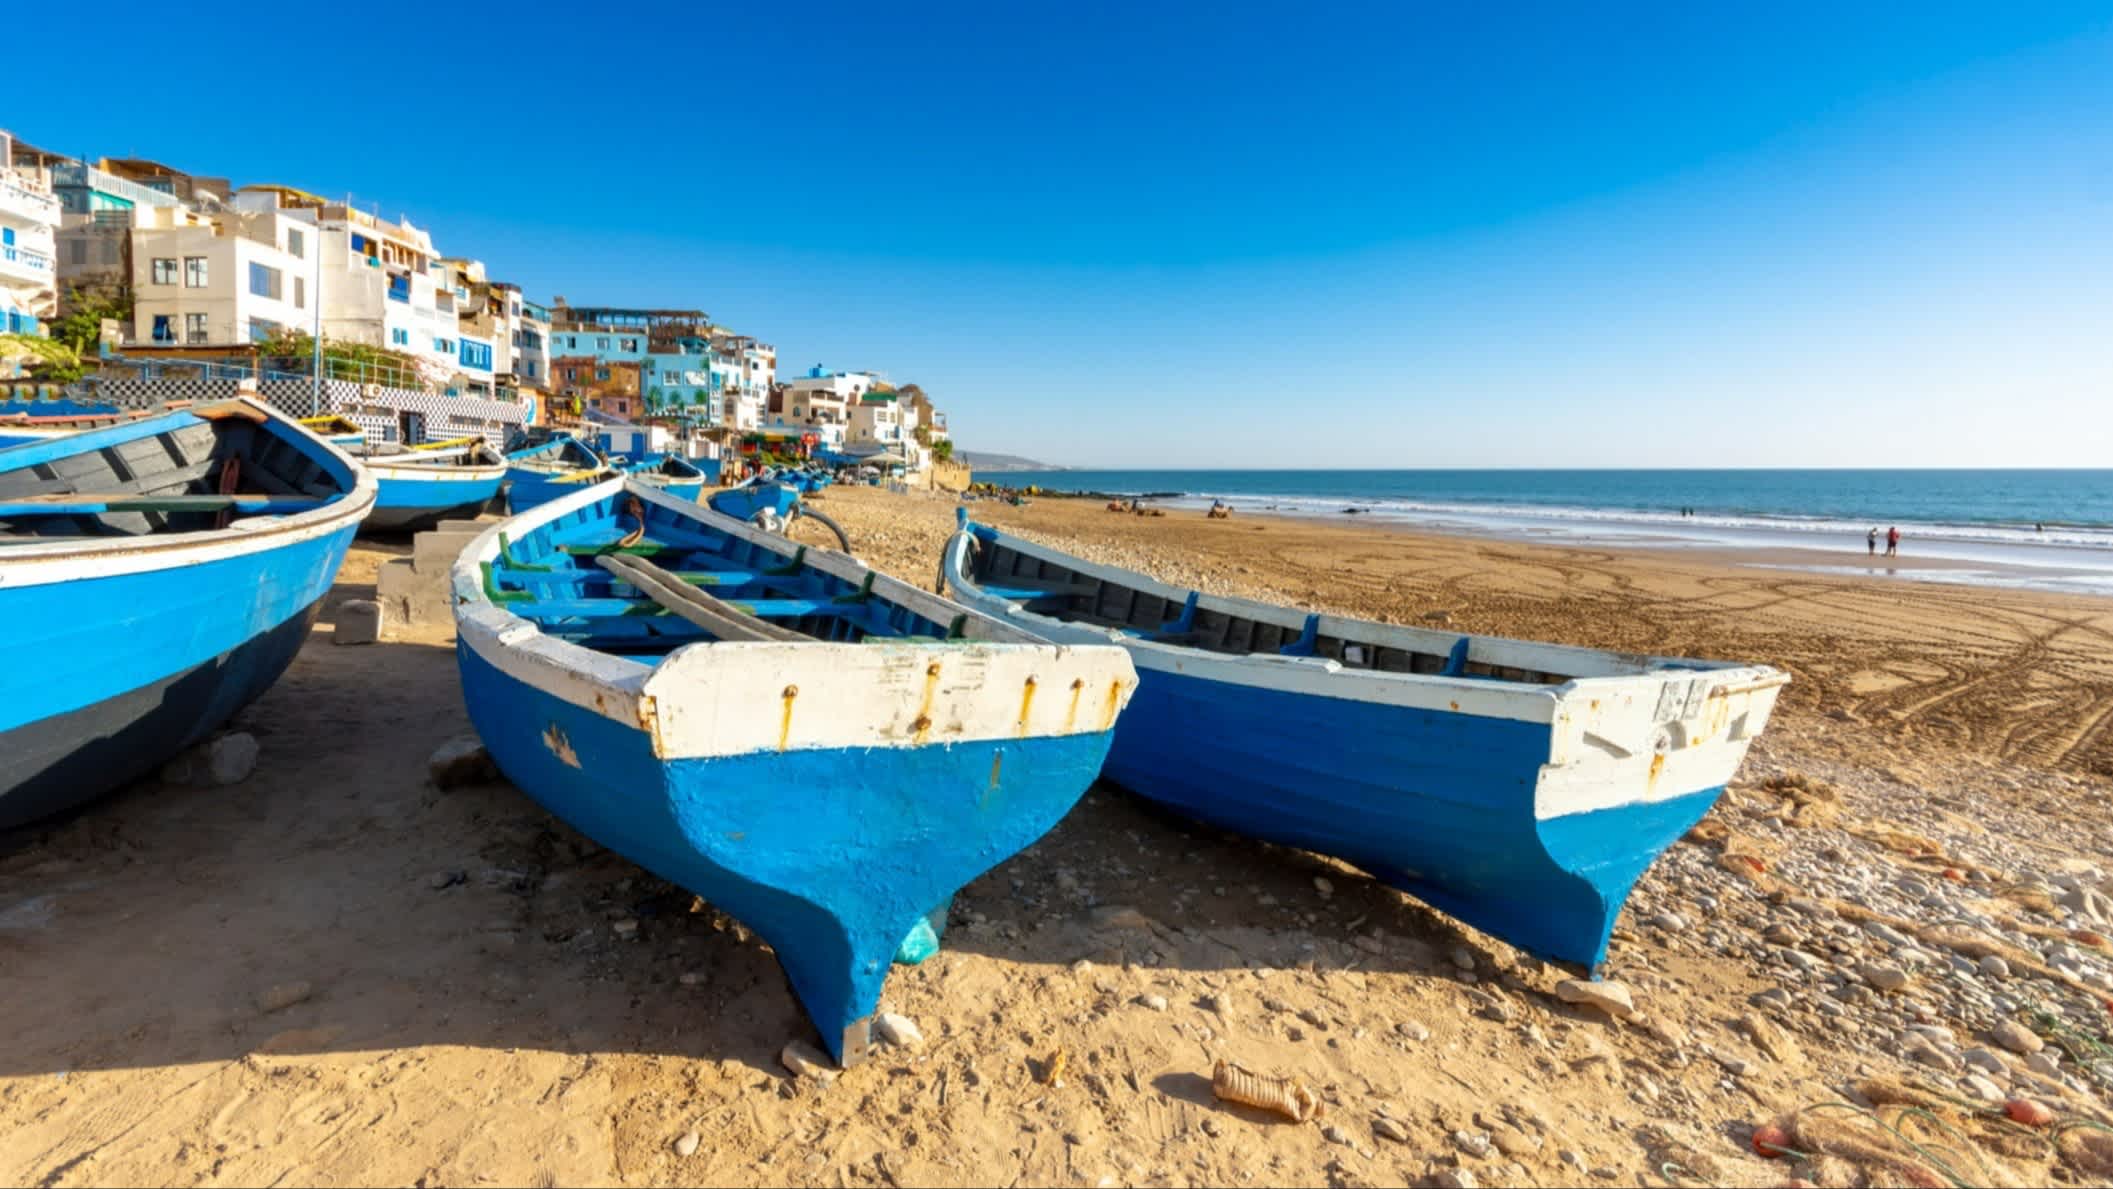 Der Strand von Taghazout, Marokko mit Blick auf blaue Boote am Strand, Menschen sowie Häusern entlang der Promenade. 